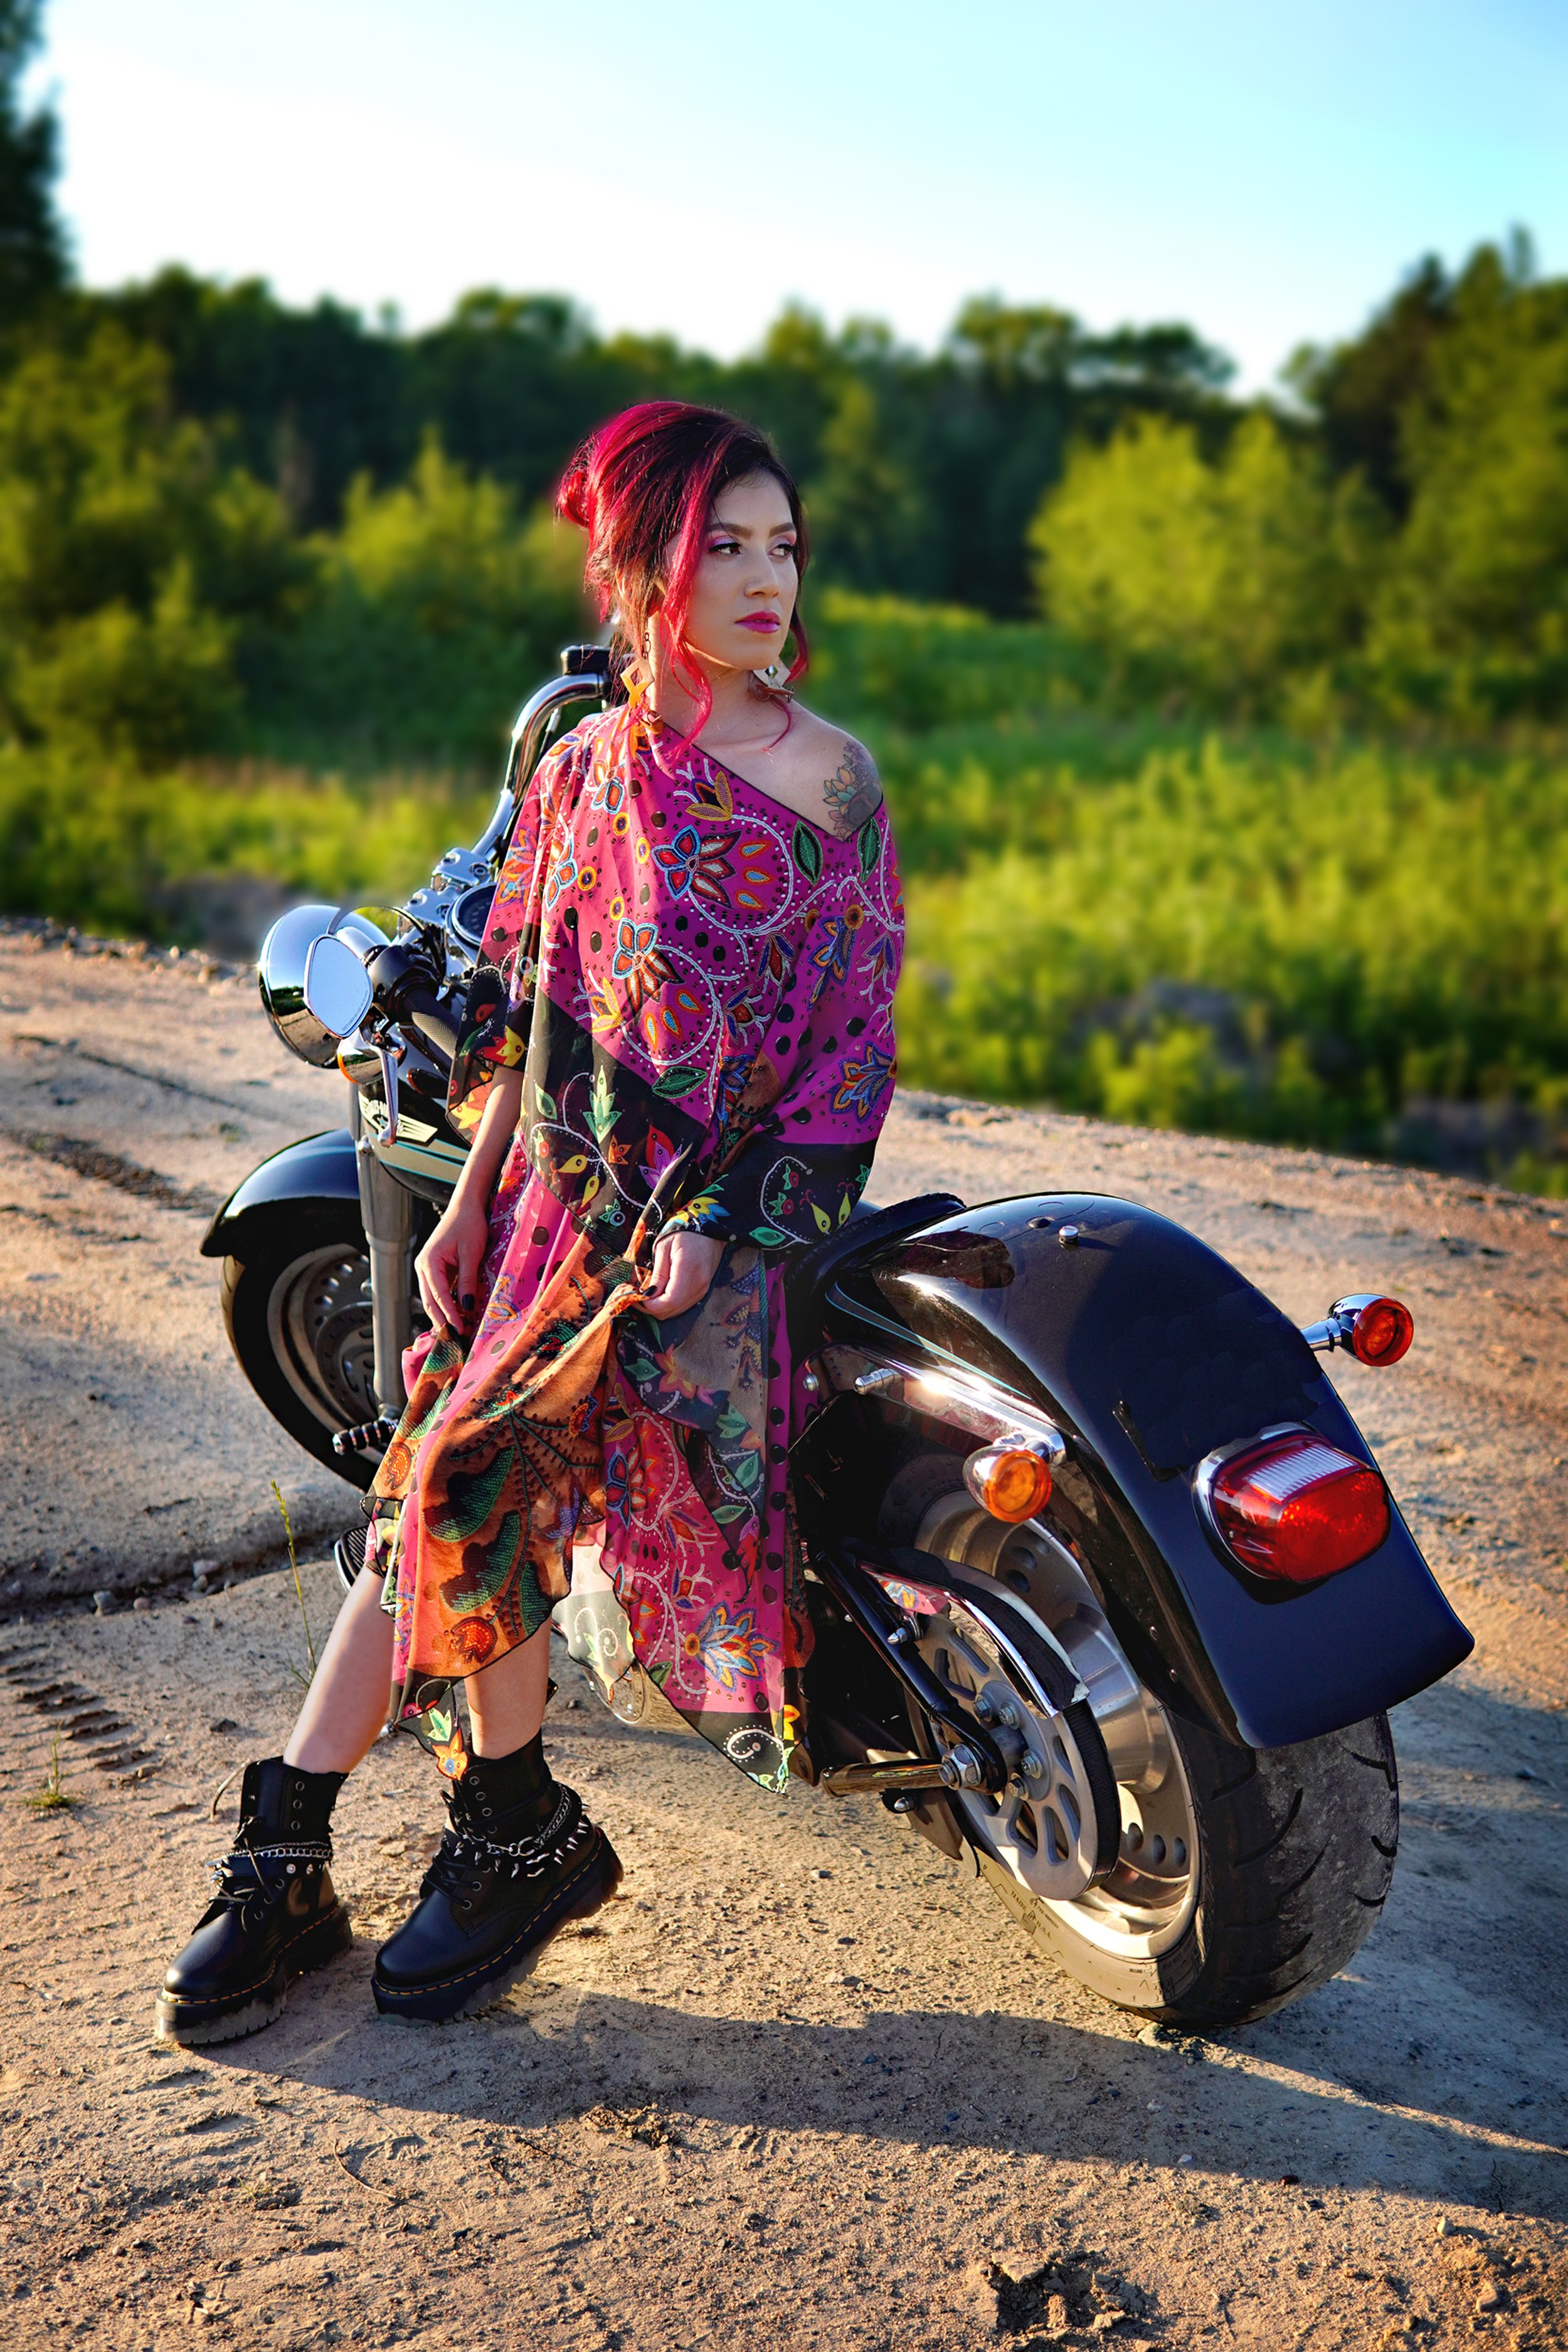 Aleyna-Profile-on-Motorcycle.jpg